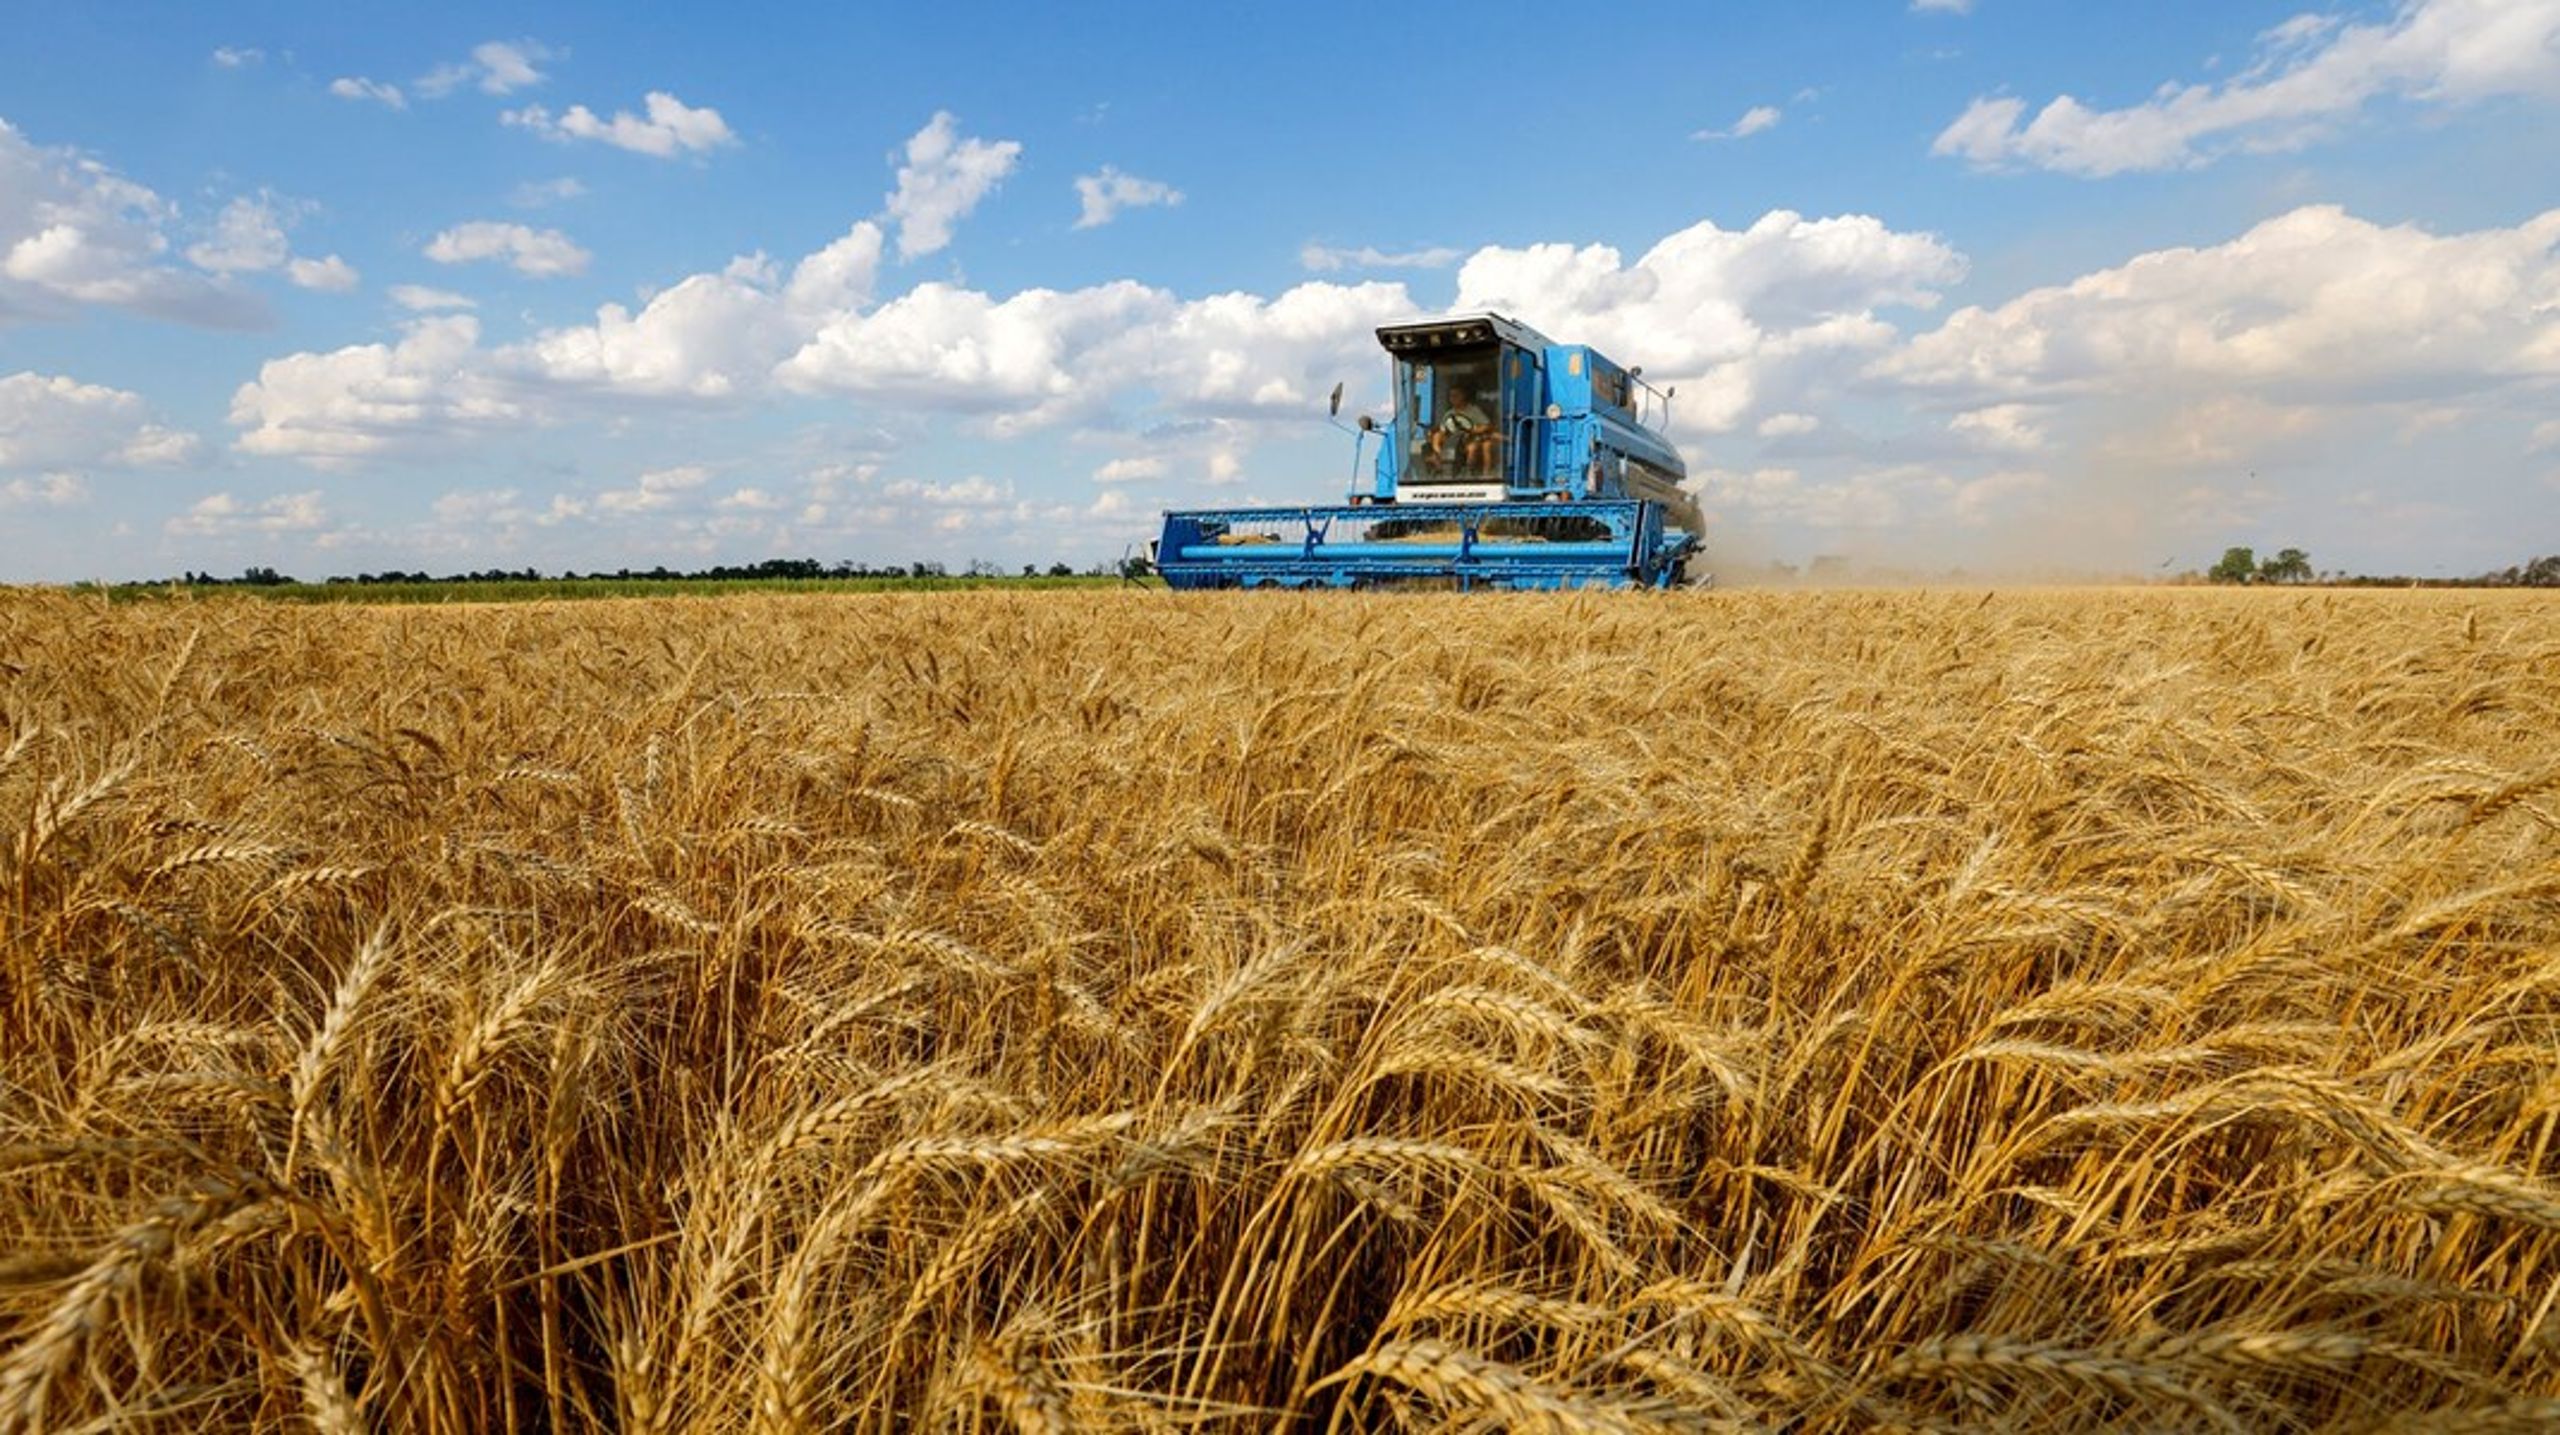 Den ukrainske kornproduktion - en af verdens 10 største - fortsætter trods krigen,
som her ved landsbyen Muzykivka i det sydøstlige Ukraine.